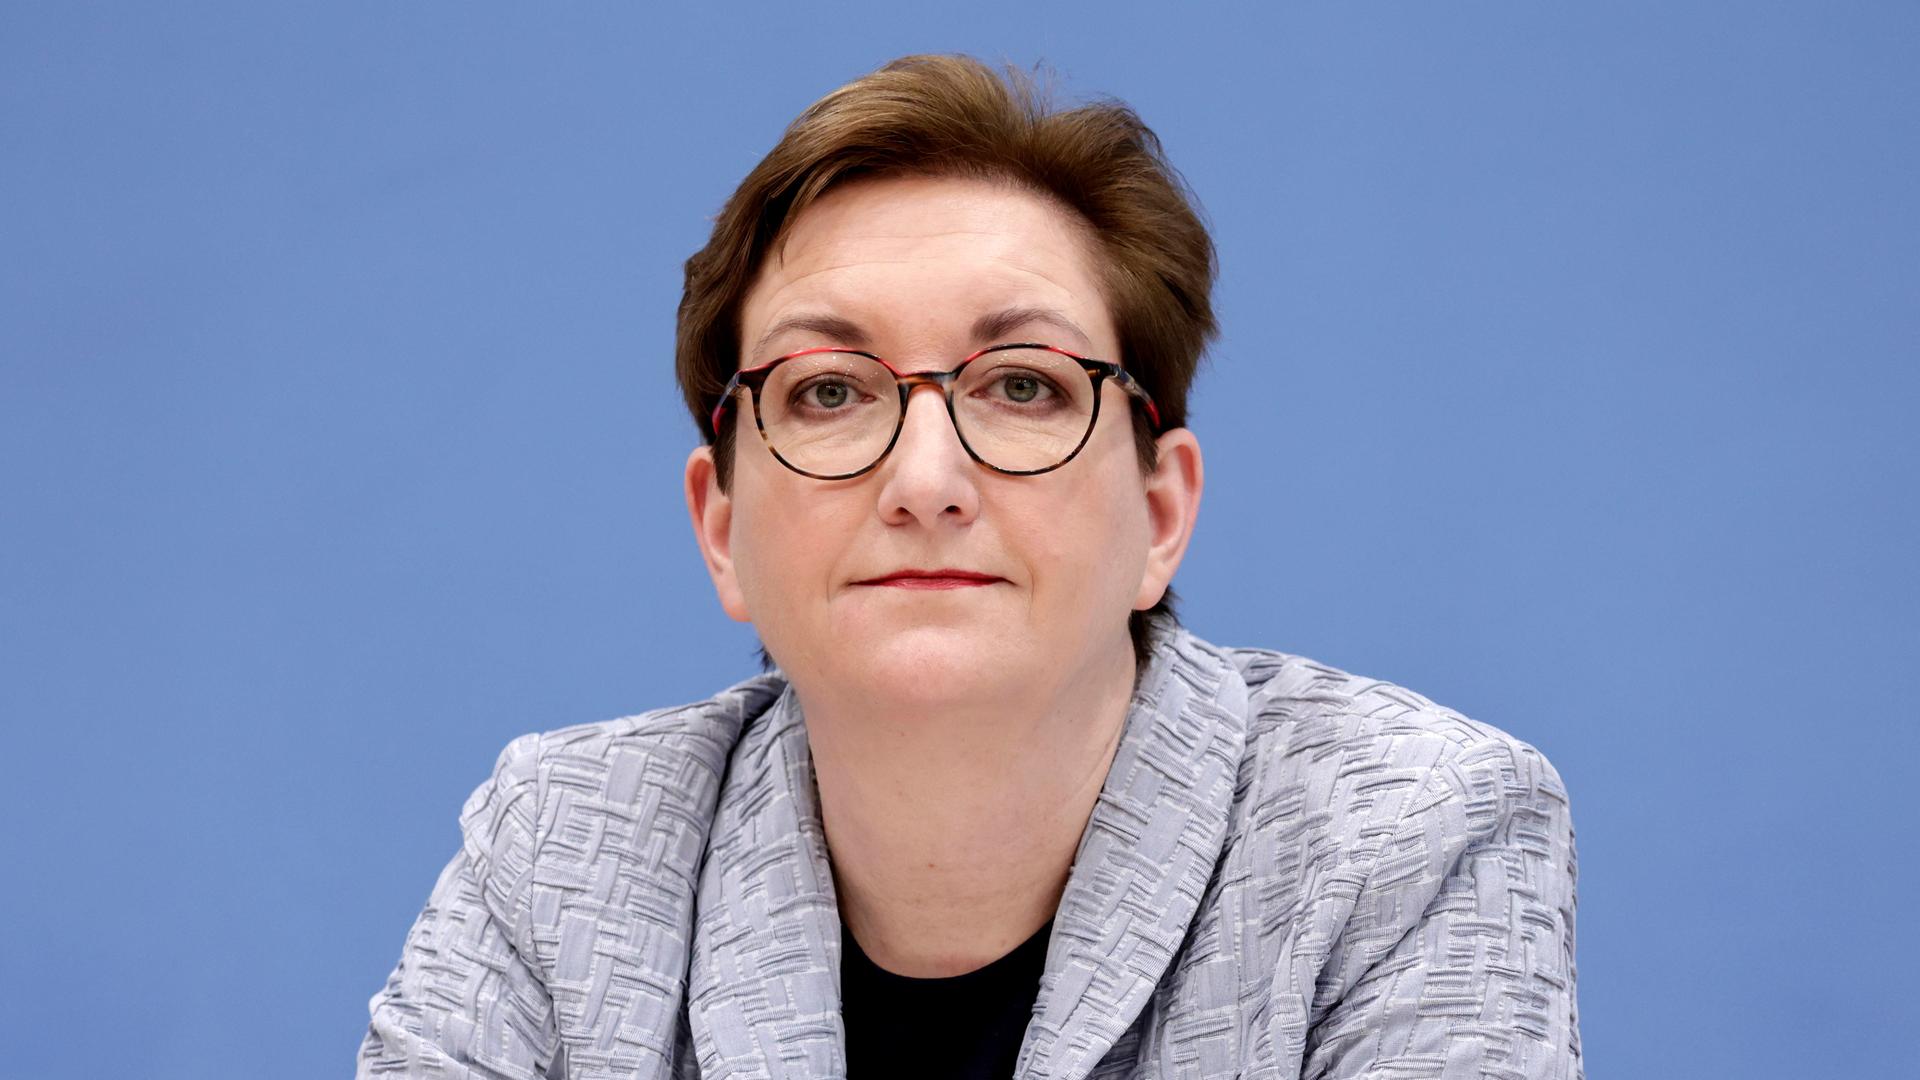 Klara Geywitz (SPD), Bundesministerin für Wohnen, Stadtentwicklung und Bauwesen, blickt bei einer Pressekonferenz in die Kamera.